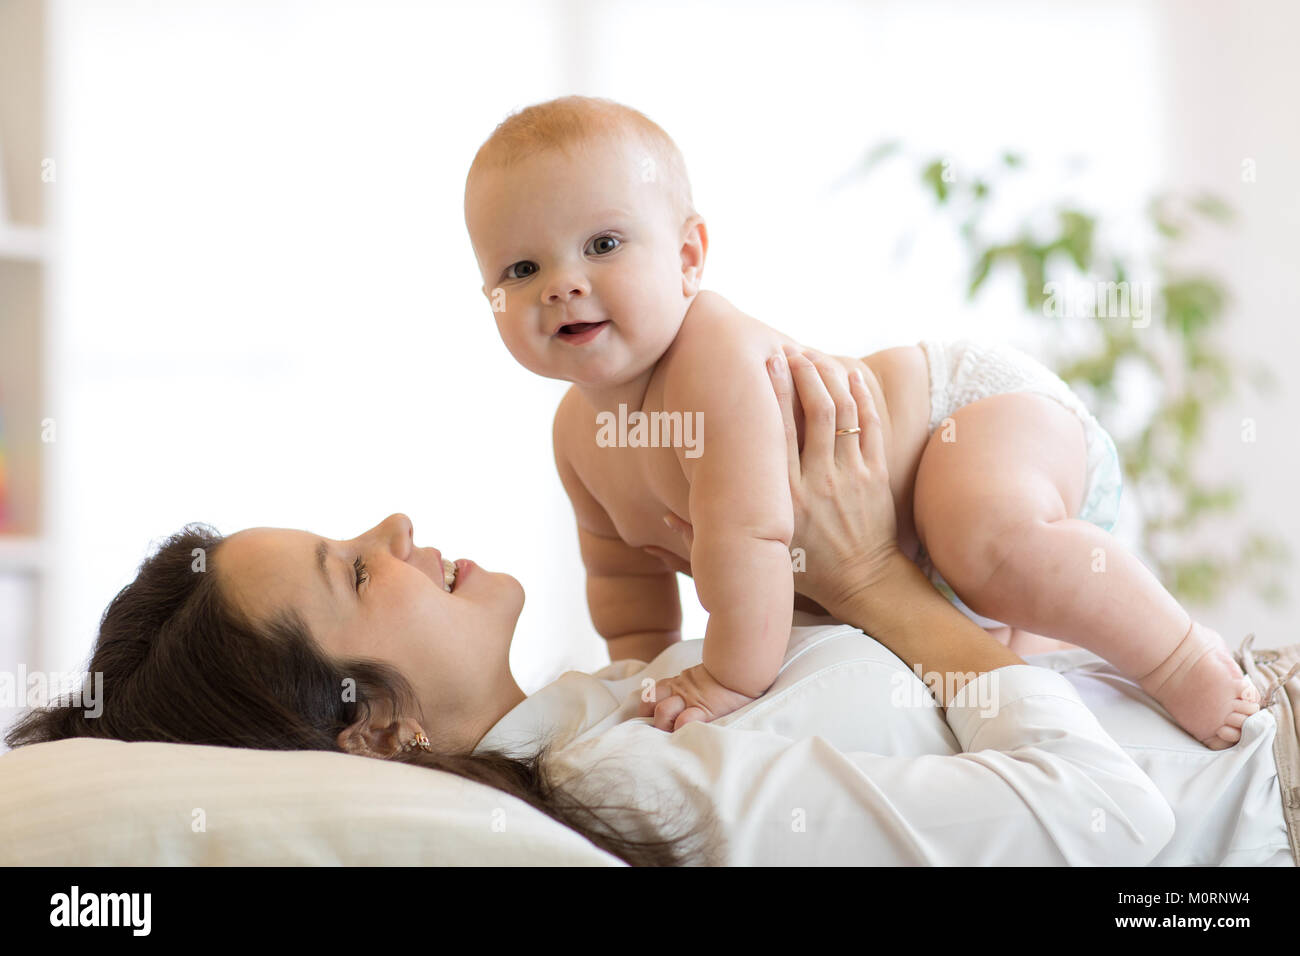 La madre e il bambino a giocare nella soleggiata camera da letto. Genitore e bambino in un momento di relax a casa. Famiglia avente divertimento insieme. Foto Stock